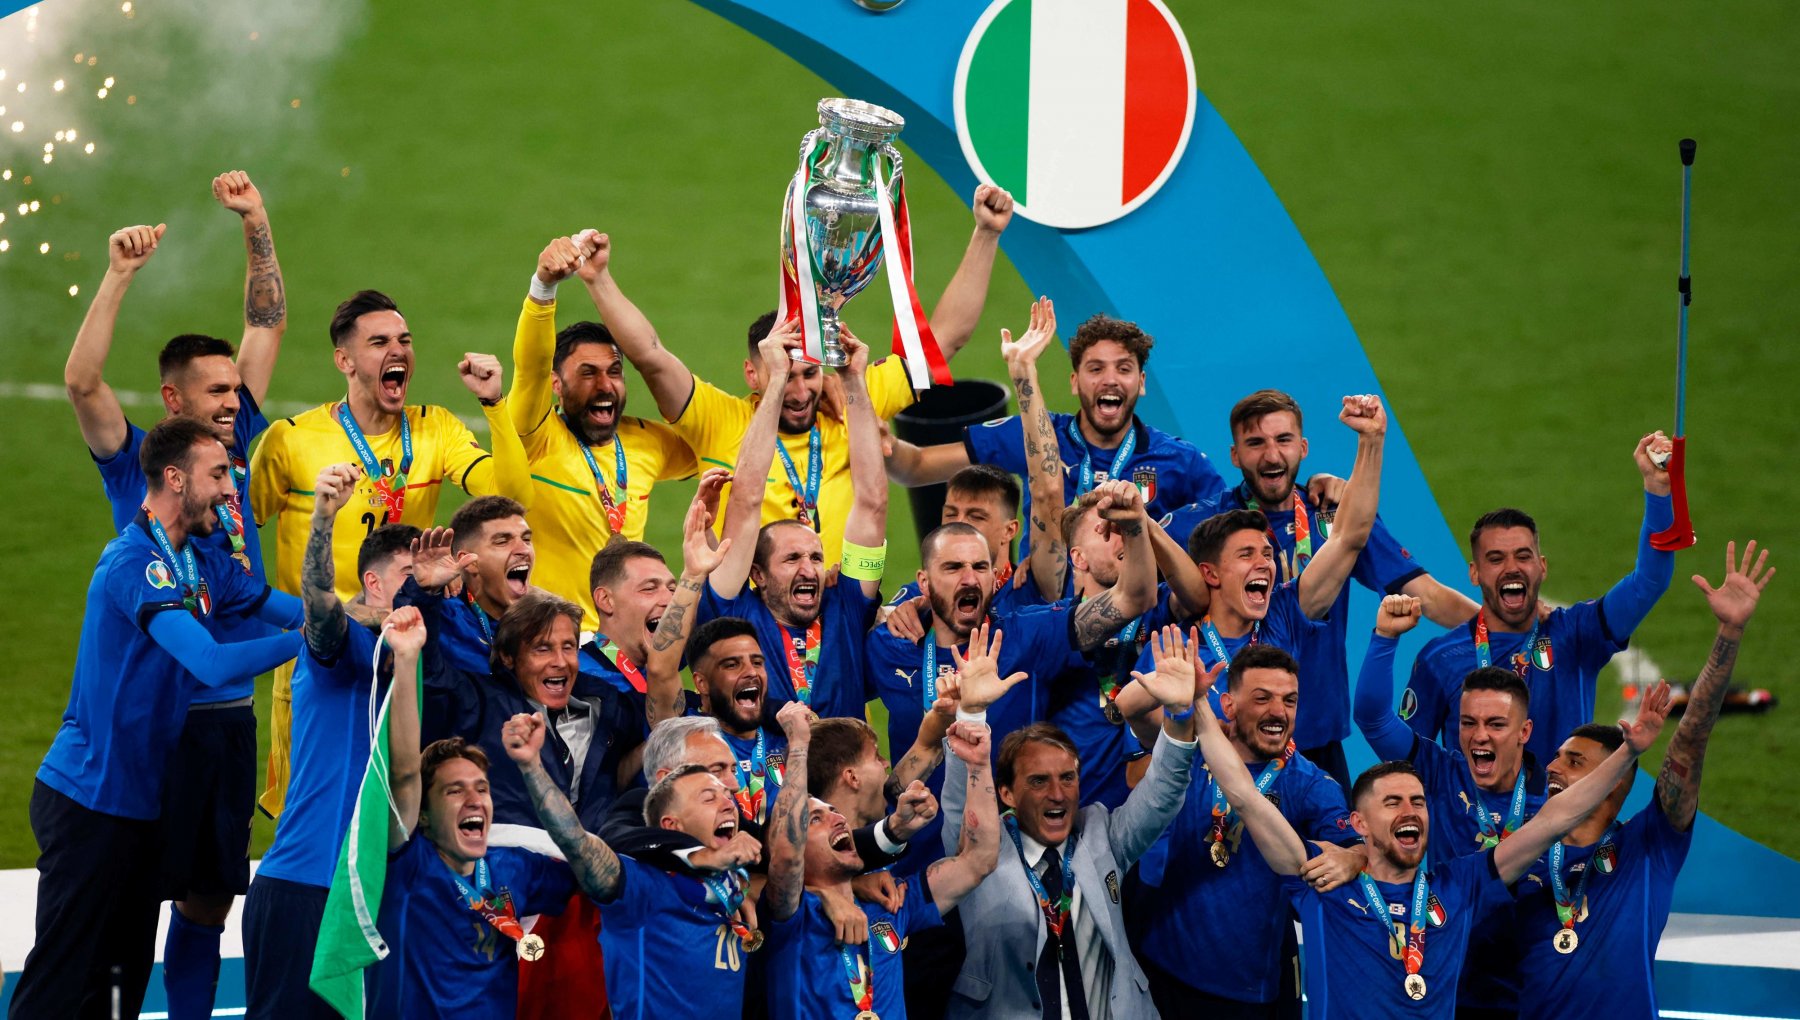  Italia campione d’Europa!  Inghilterra battuta ai rigori